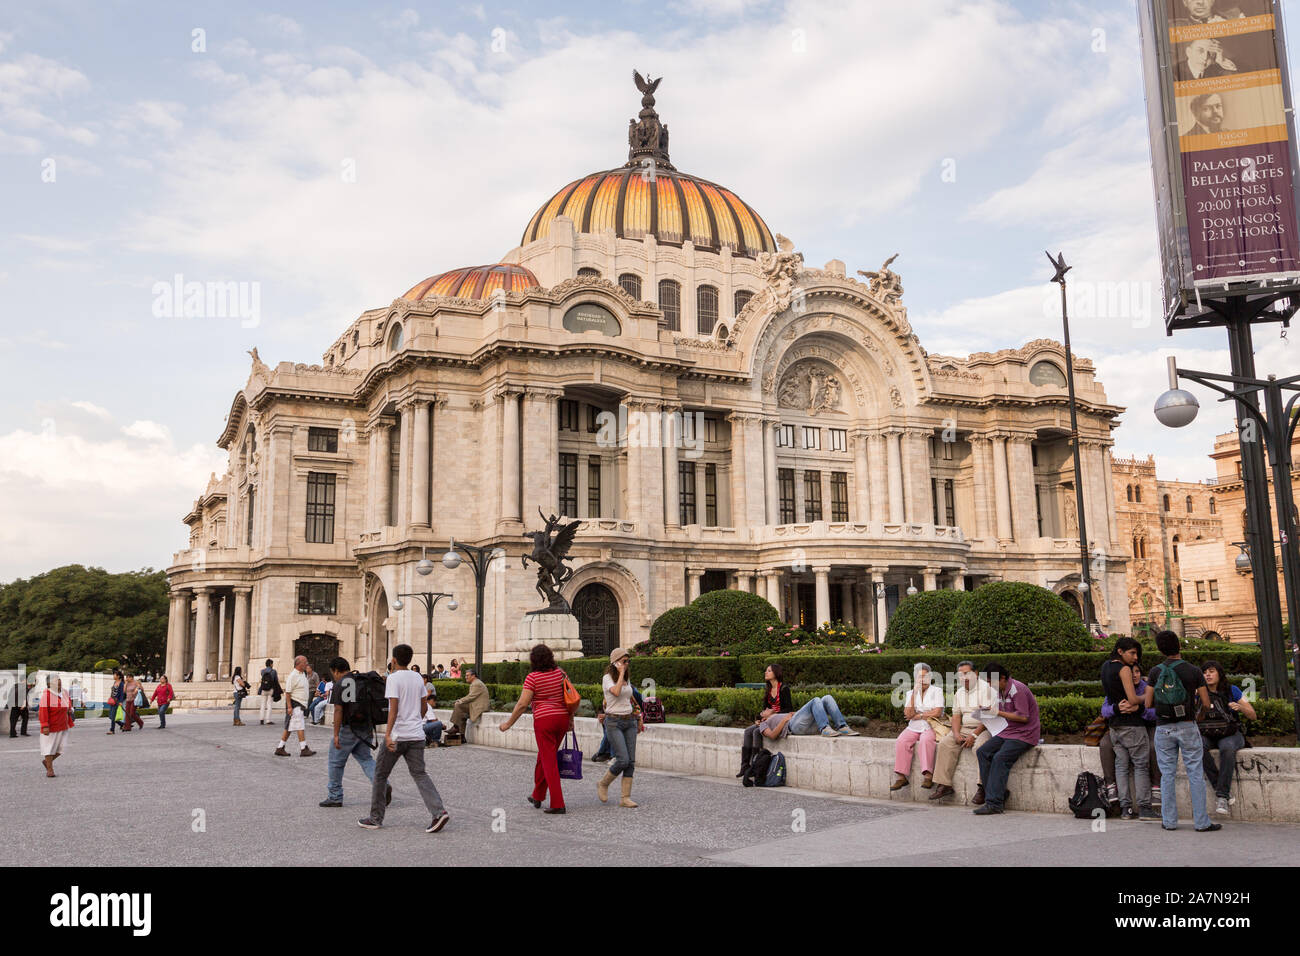 Palacio de Bellas Artes on Alameda Central park in Mexico City, Mexico. Stock Photo